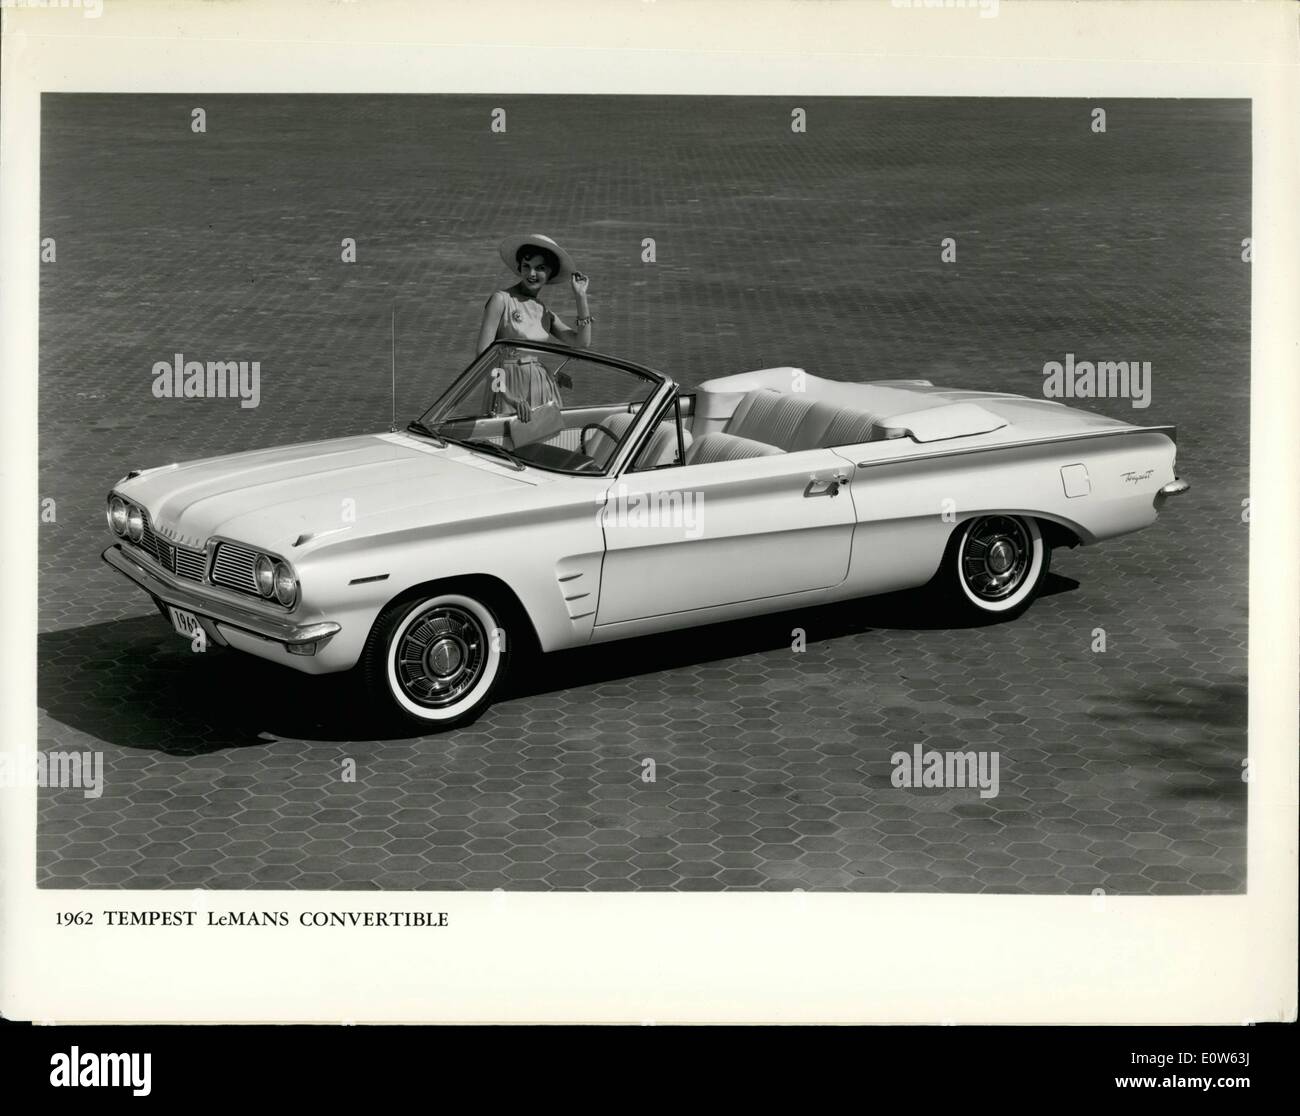 Sett. 09, 1961 - attraente oltre a PontiacÃ¢â'¬â"¢s nuova serie Tempest per 1962 è superbamente convertibile in stile nella foto Foto Stock